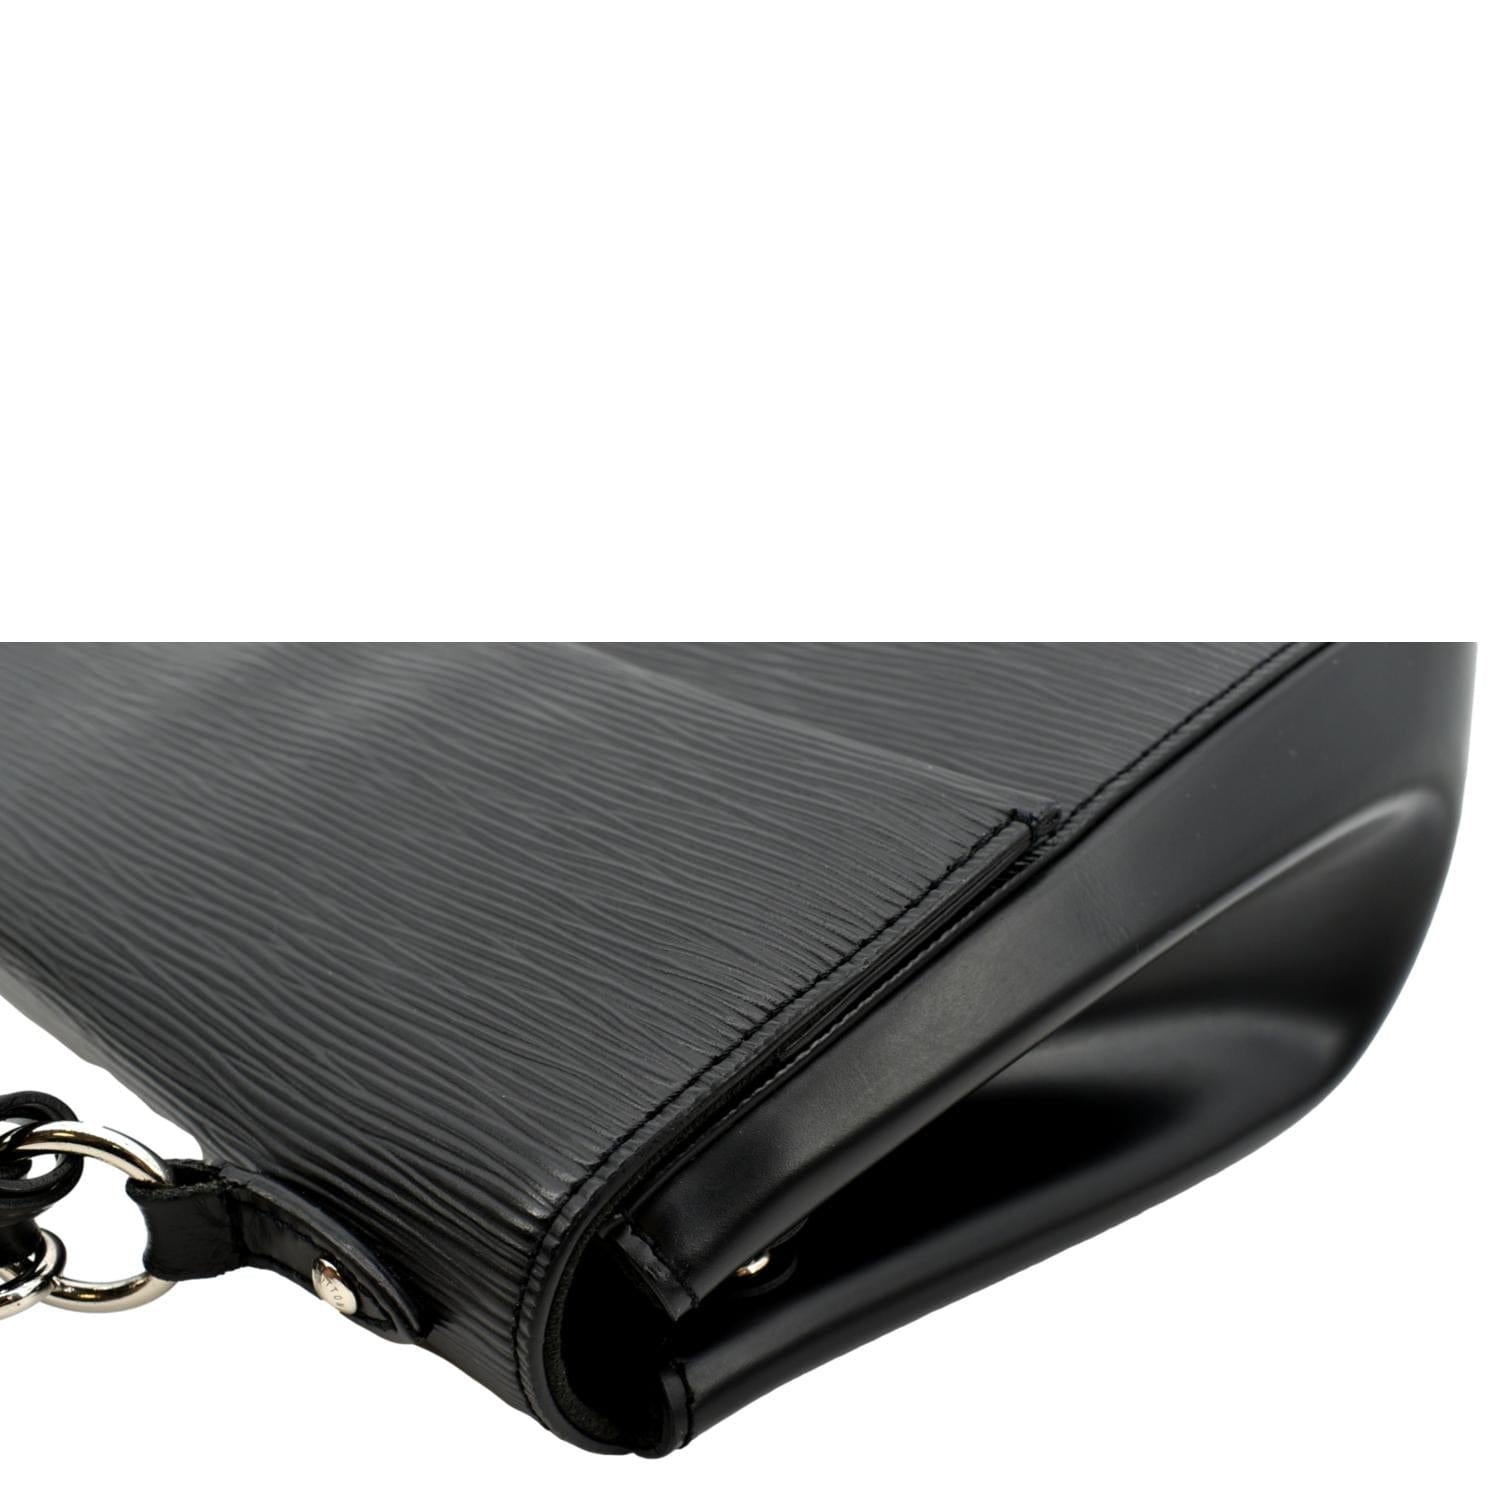 Authentic Louis Vuitton Epi Cluny Shoulder Bag Purse Black M52252 LV 8151F